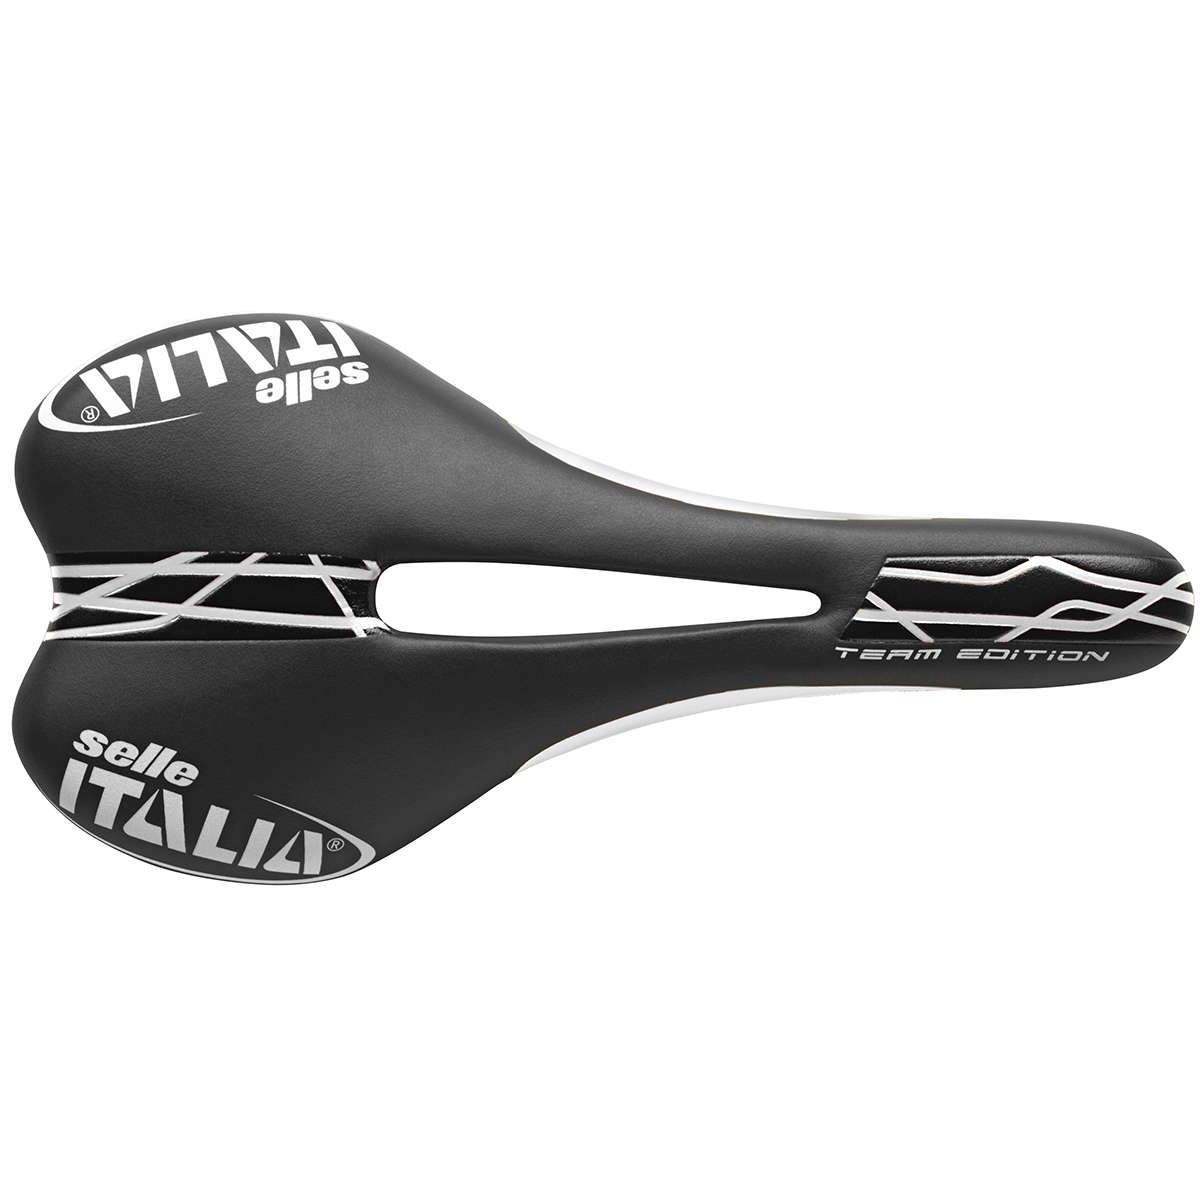 Selle Italia SLR Team S2 Titanium Flow Zadel Zwart/Wit